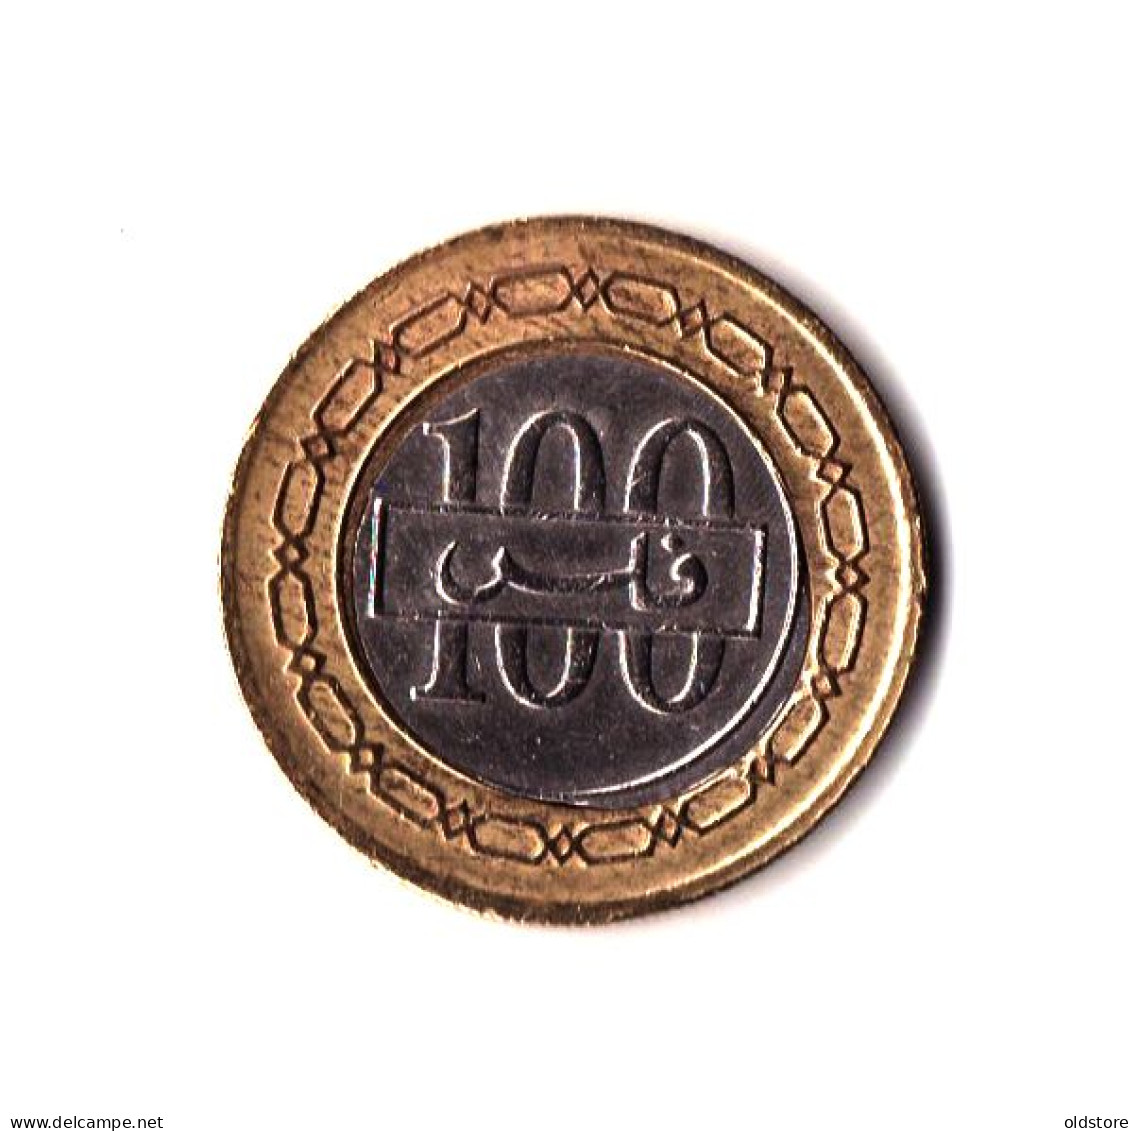 Bahrain Coins - State Of Bahrain 100 Fils Old Rare ERROR Coin - ND 1995 #4 - Bahreïn